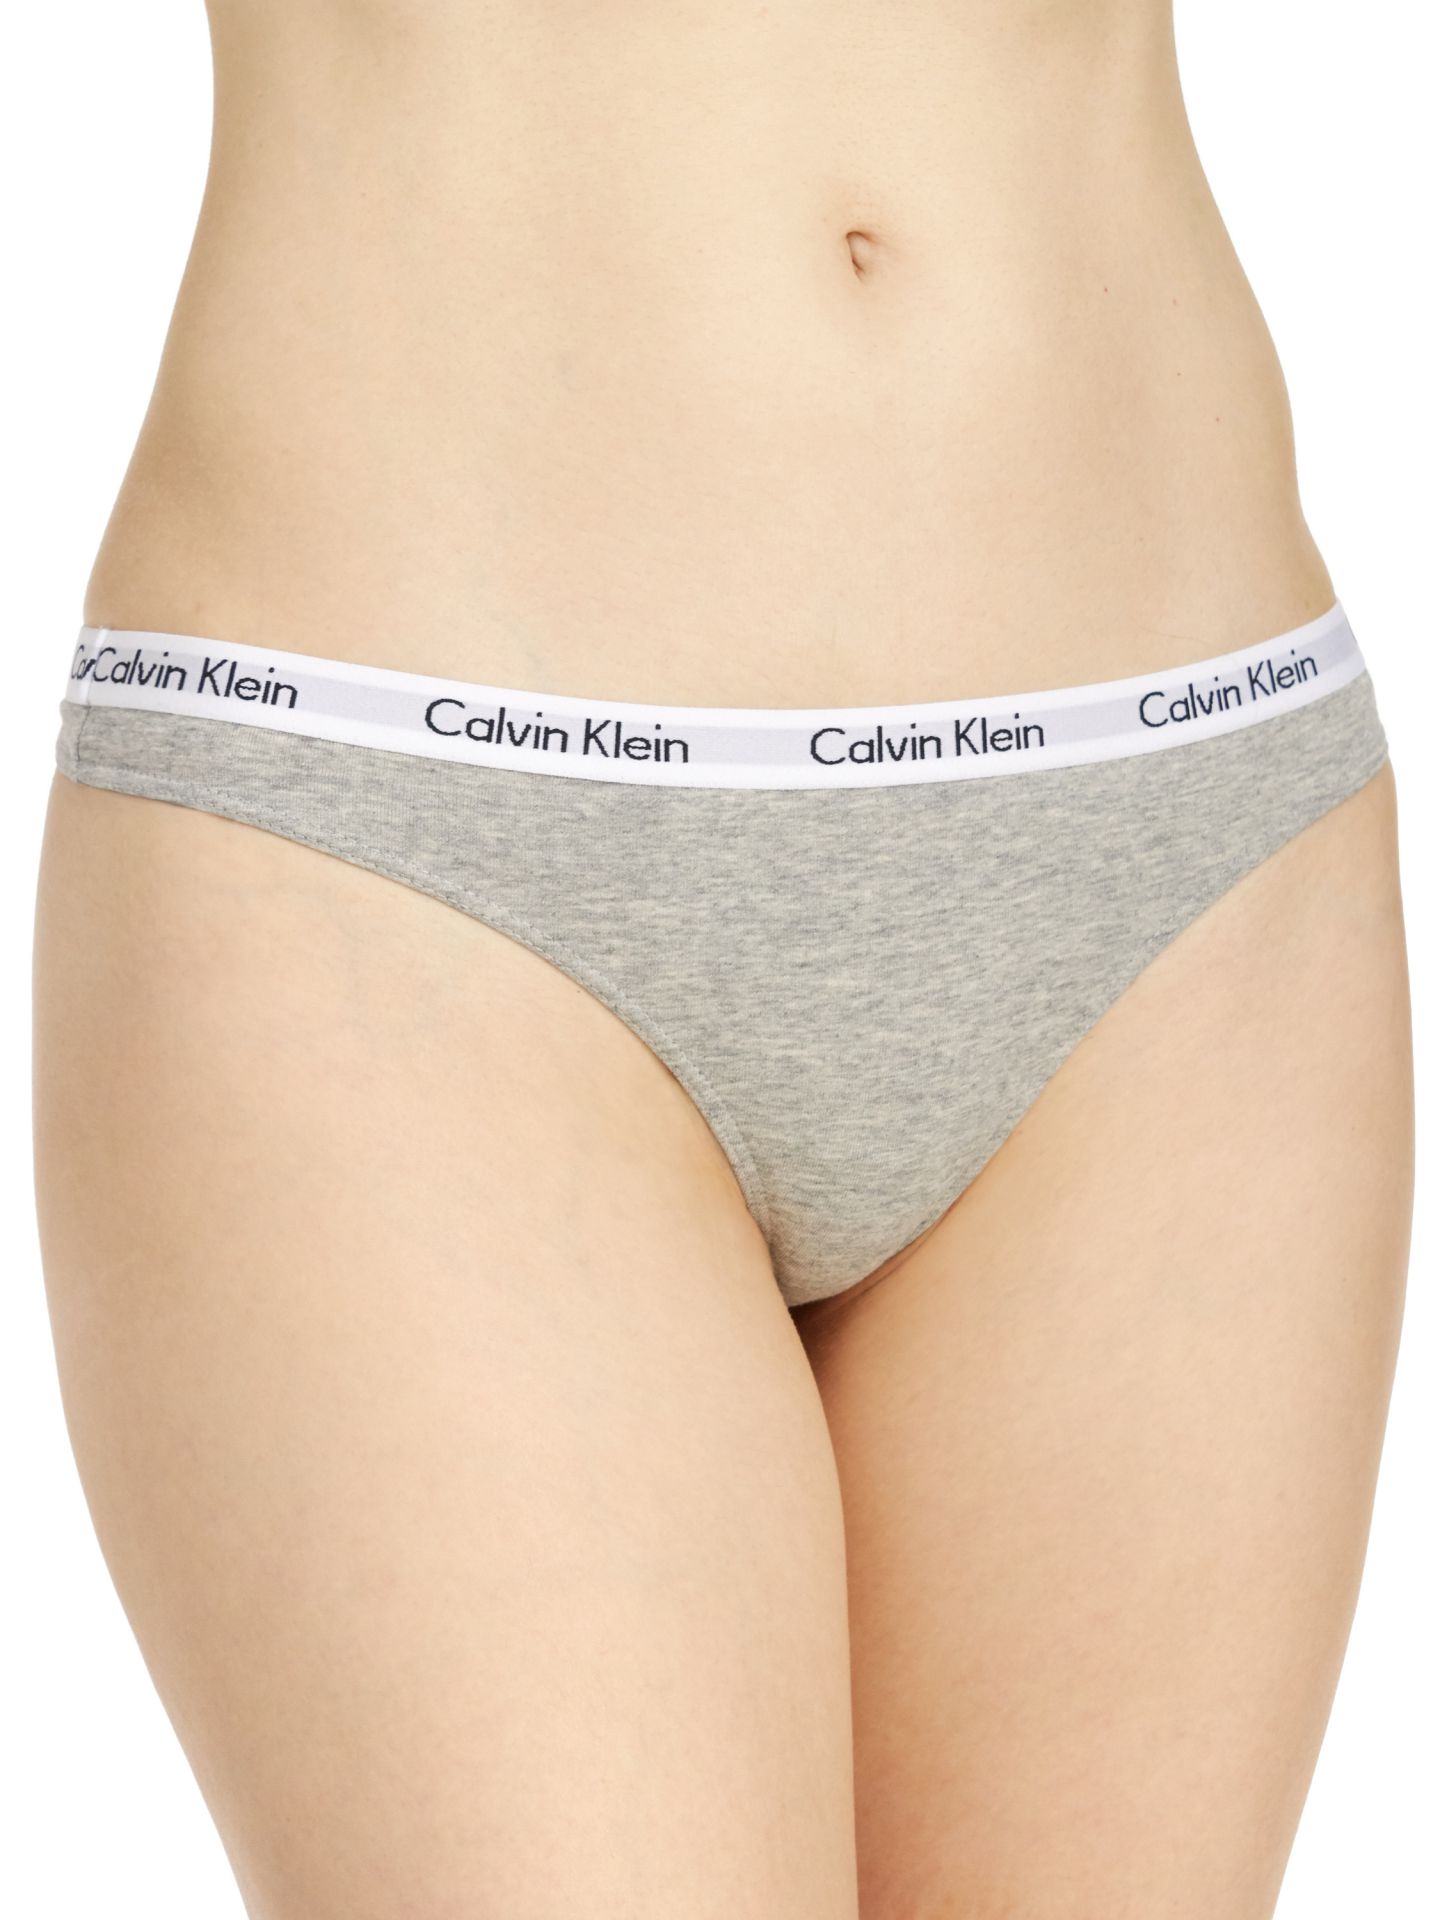 Calvin Klein Women's Carousel Thong - 3 Pack qd3587